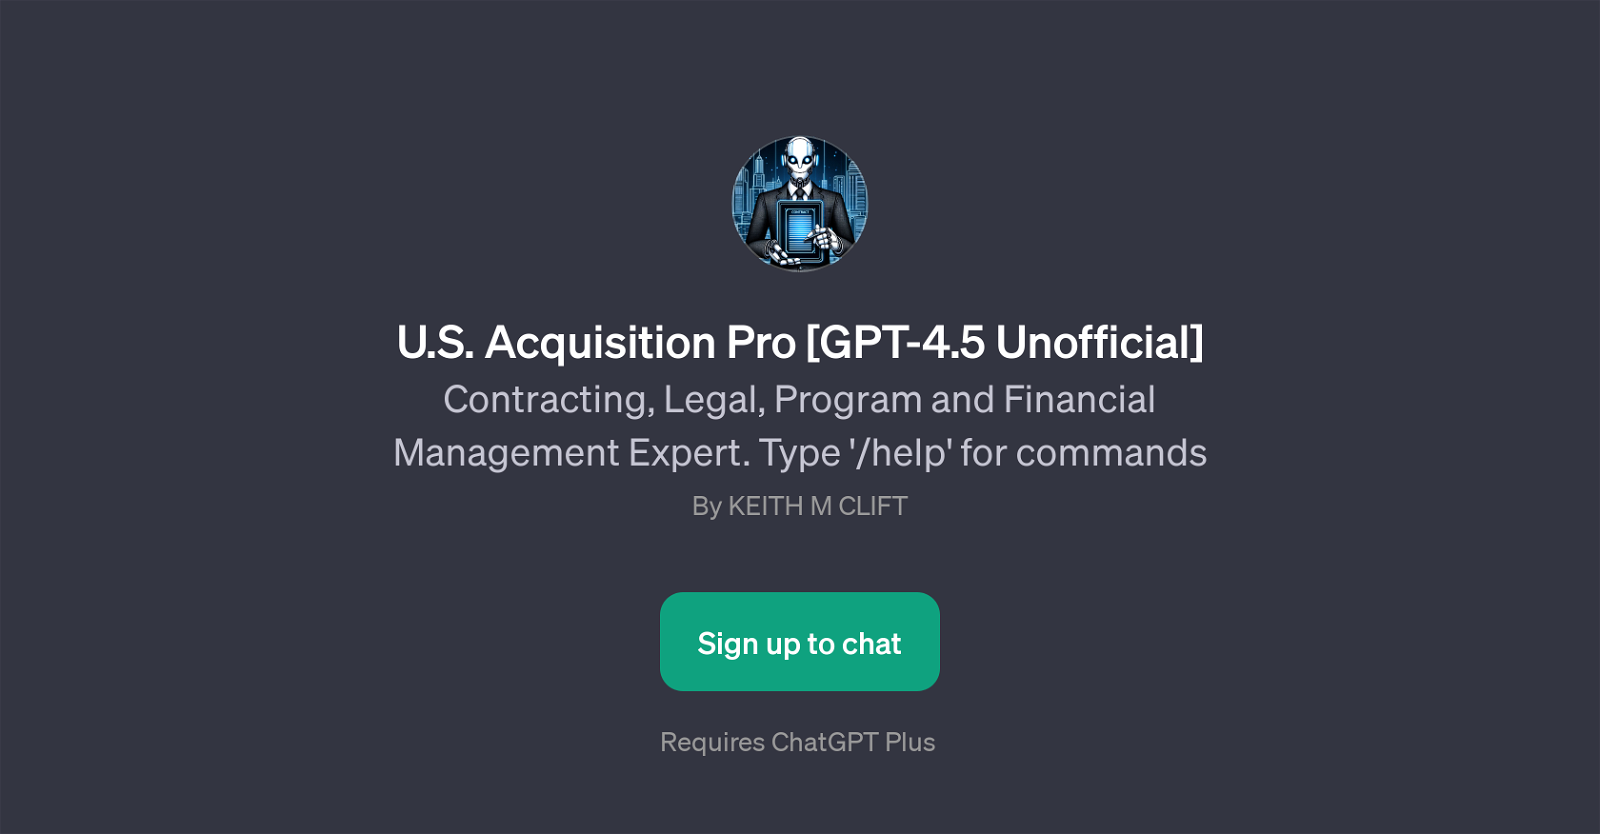 U.S. Acquisition Pro [GPT-4.5 Unofficial] website